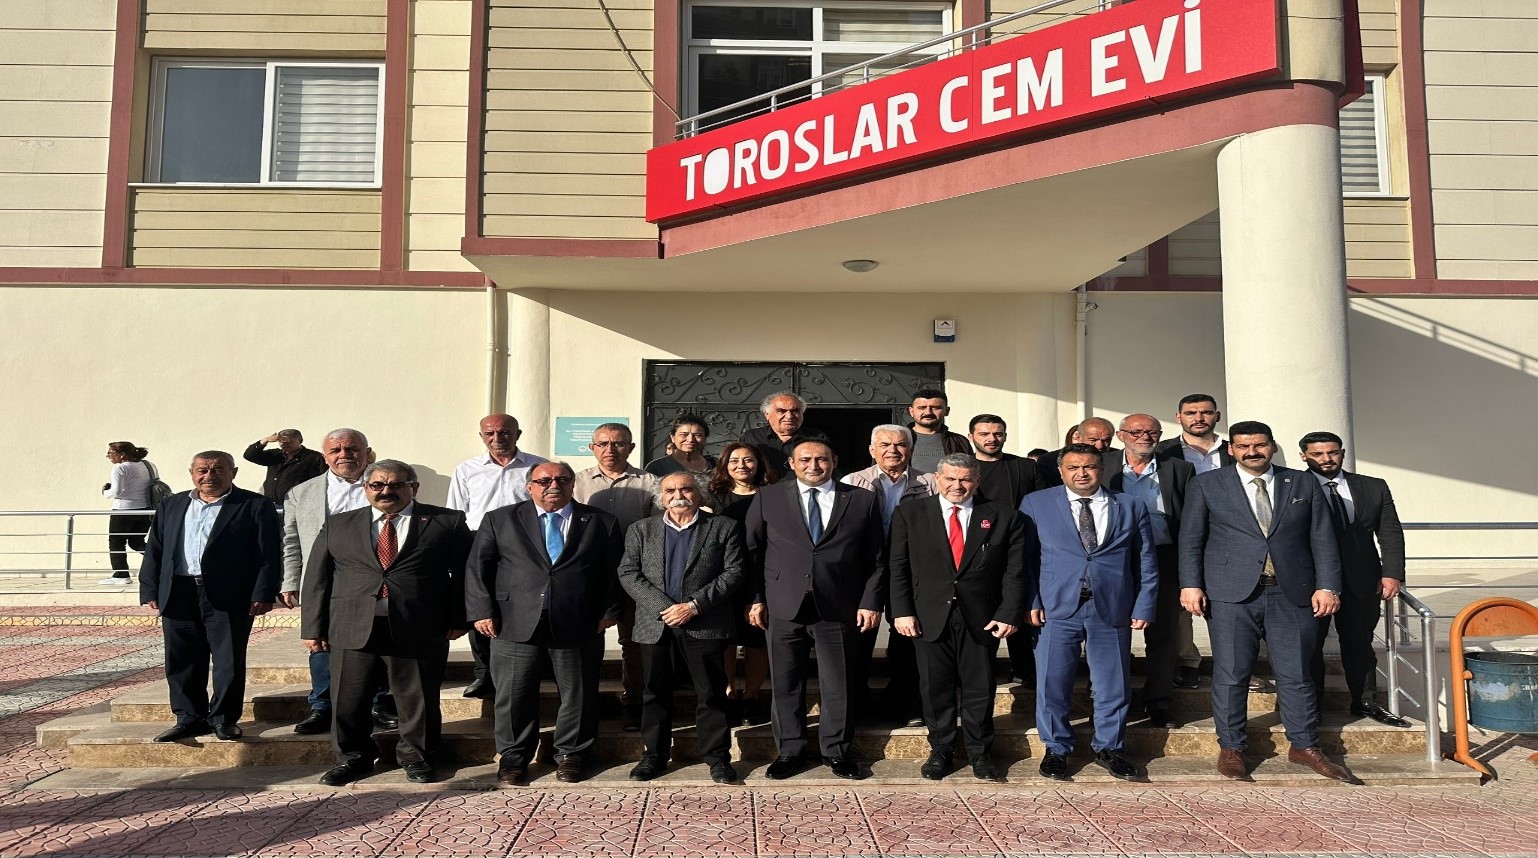 MHP Mersin Milletvekili adayı Dr. Levent UYSAL Toroslar Cemevi’ni ziyaret etti. 23